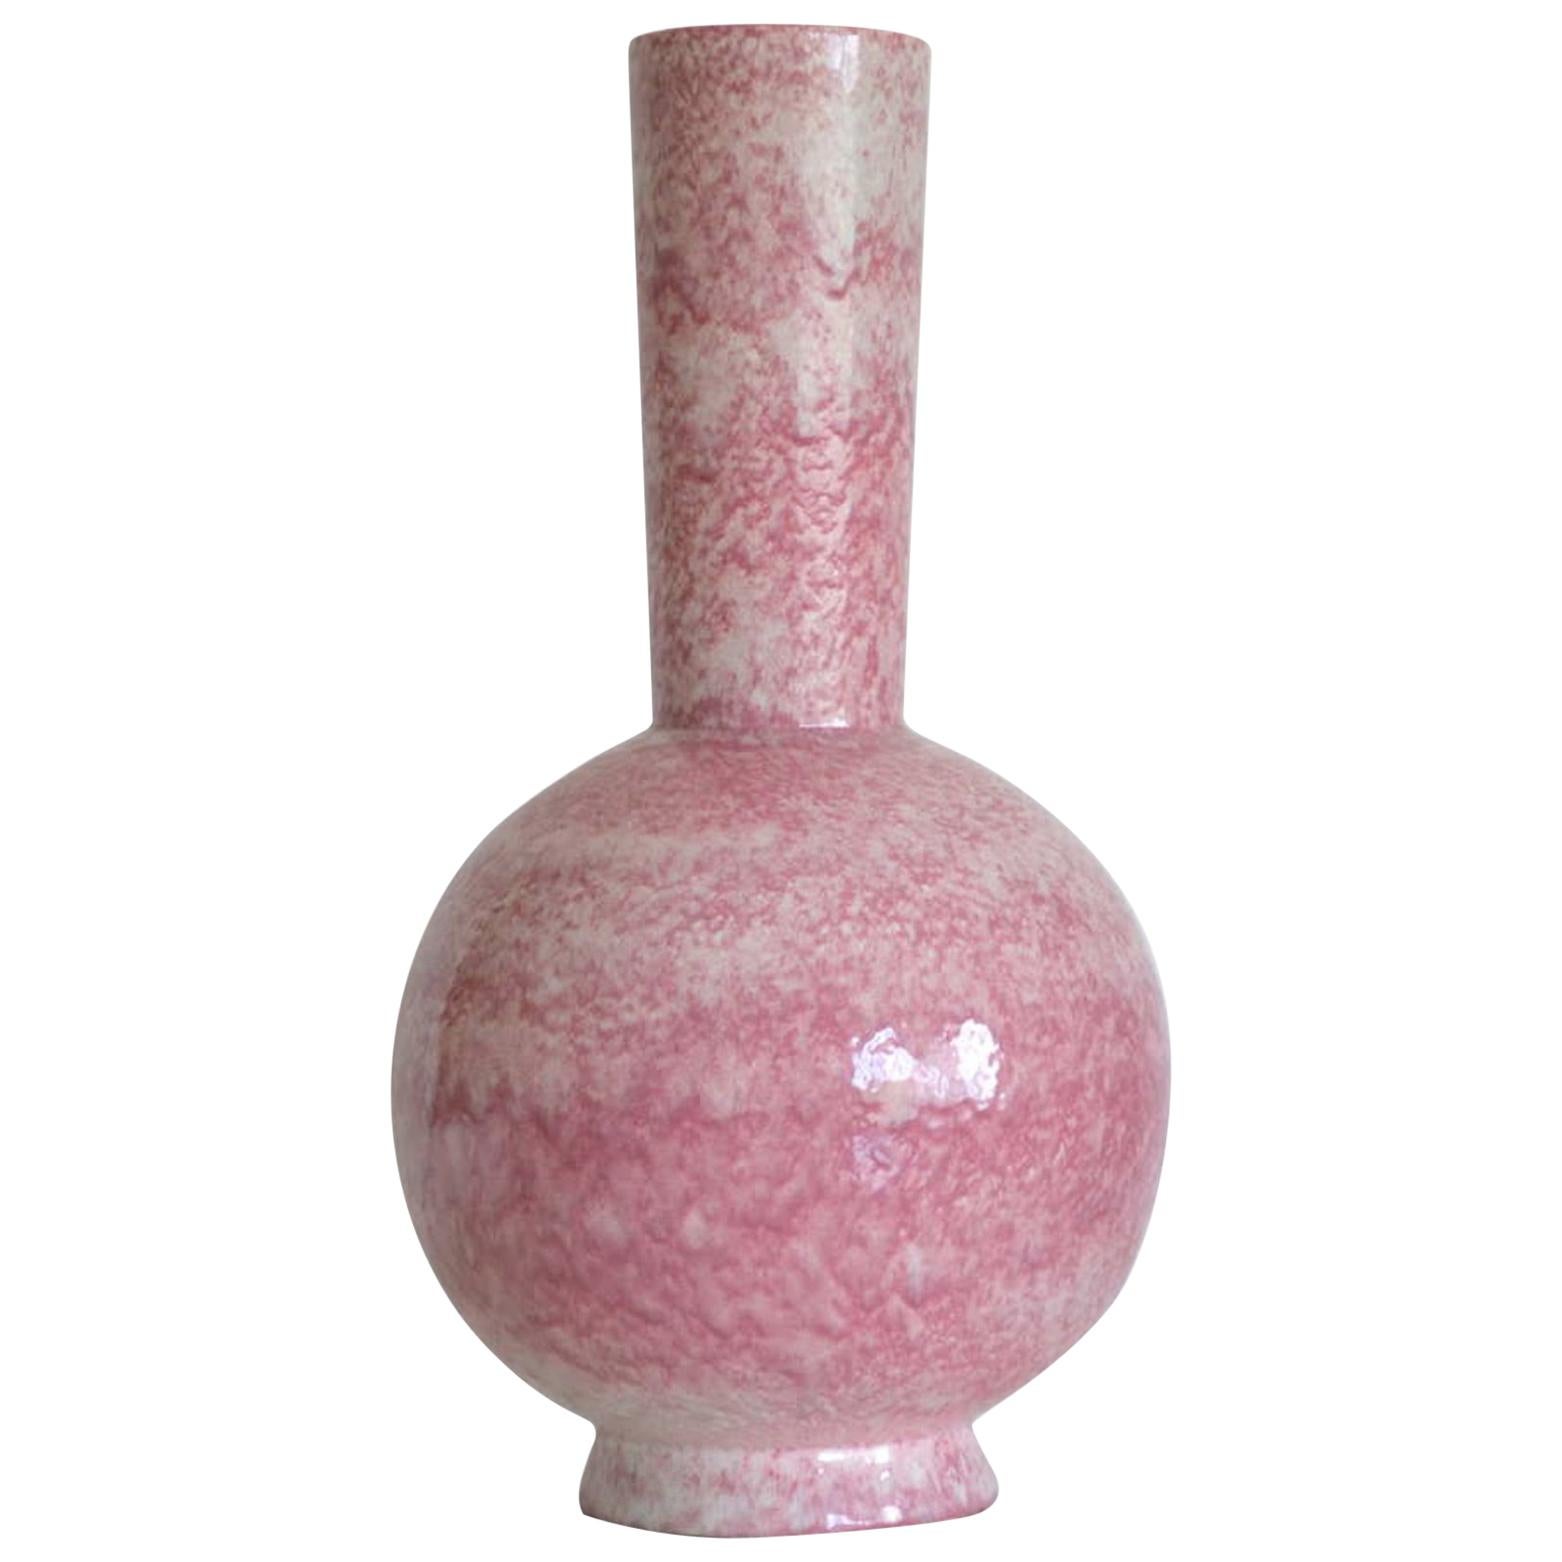 Midcentury Long Neck Crackle Glazed Ceramic Vase For Sale